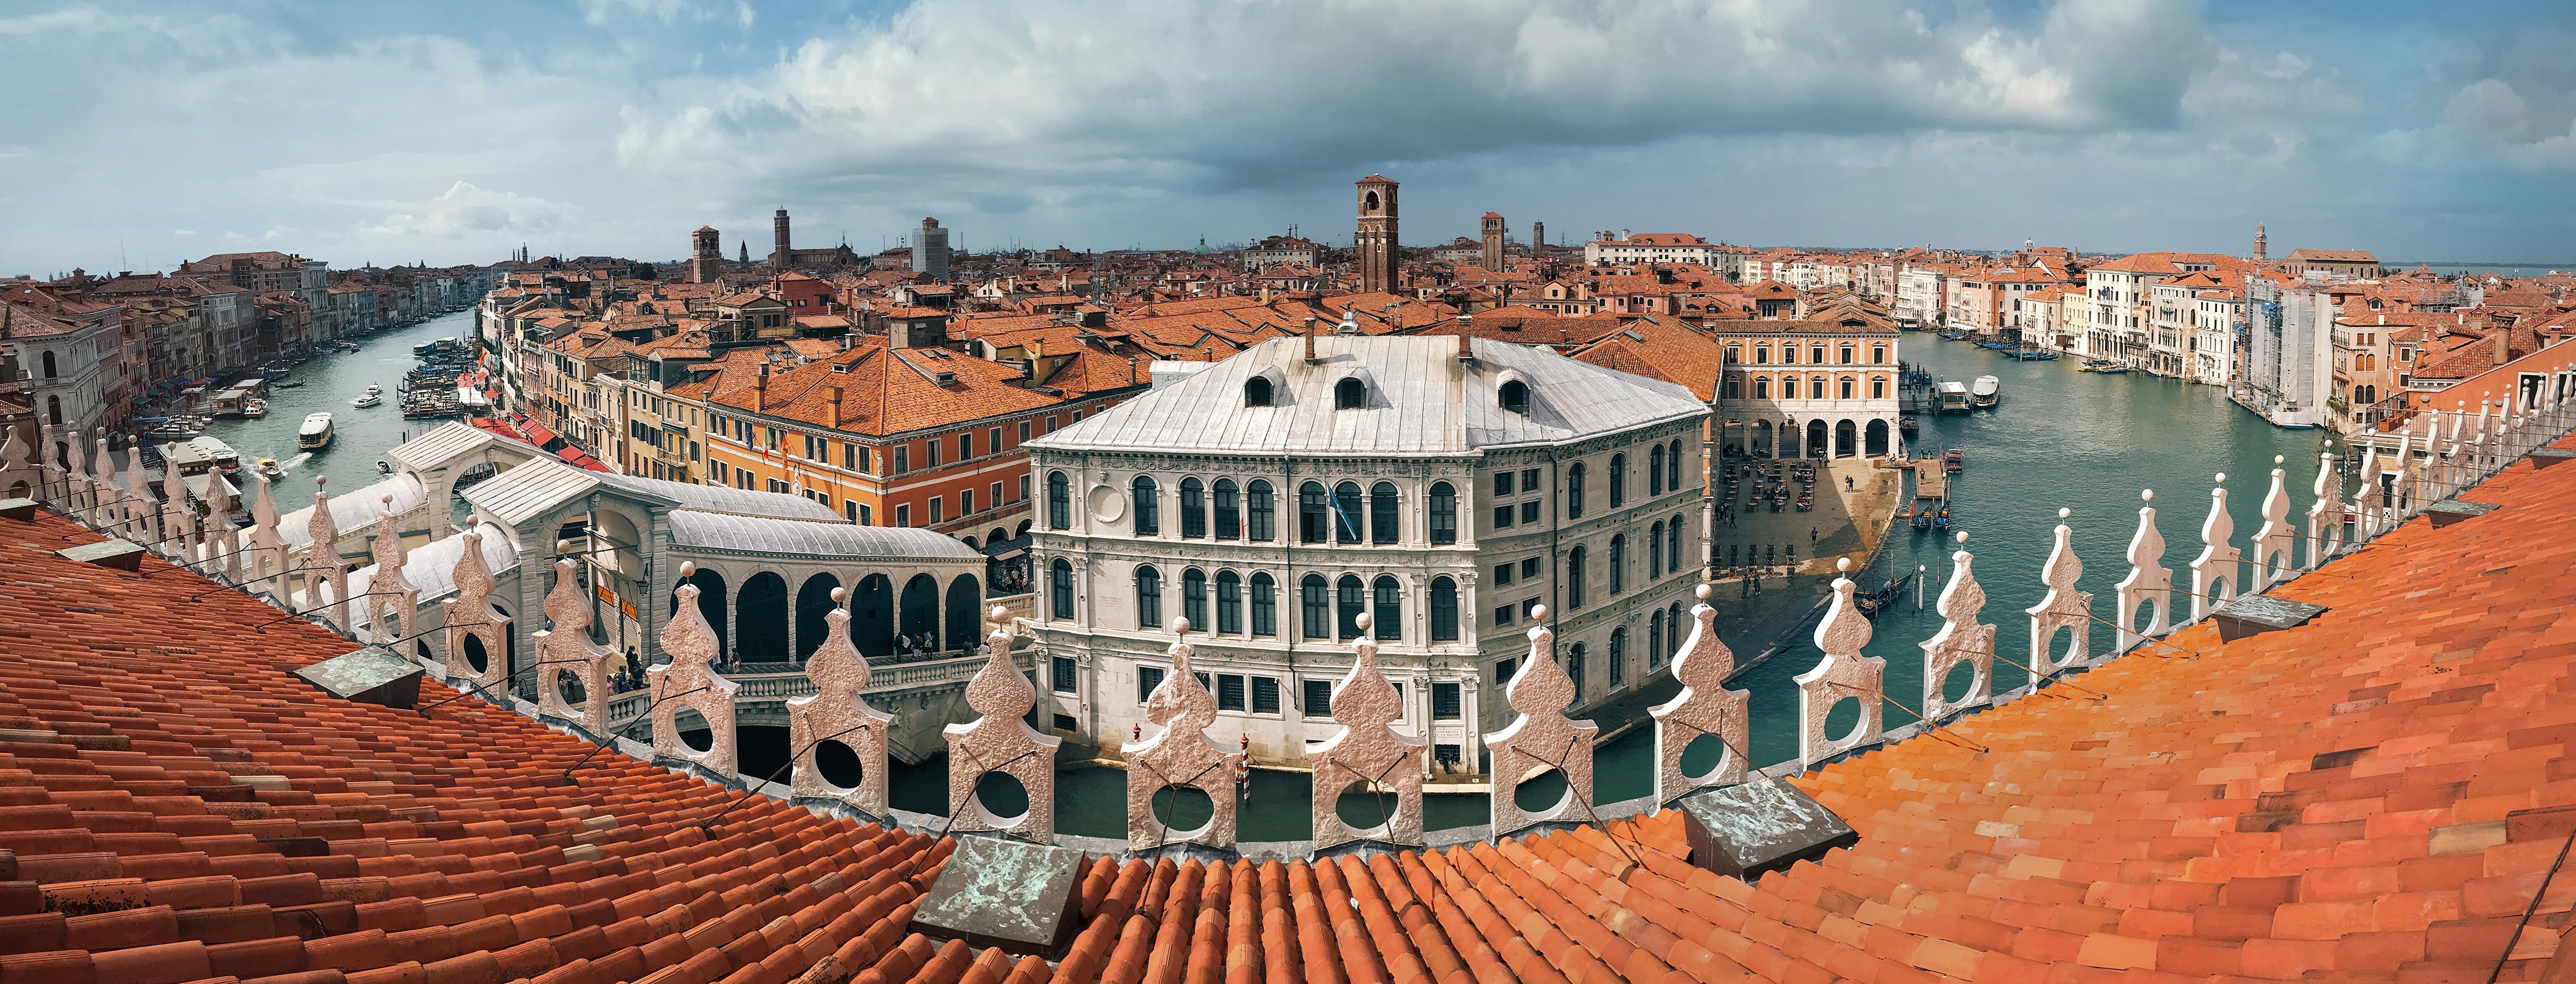 Обои Венеции панорама города на рабочий стол